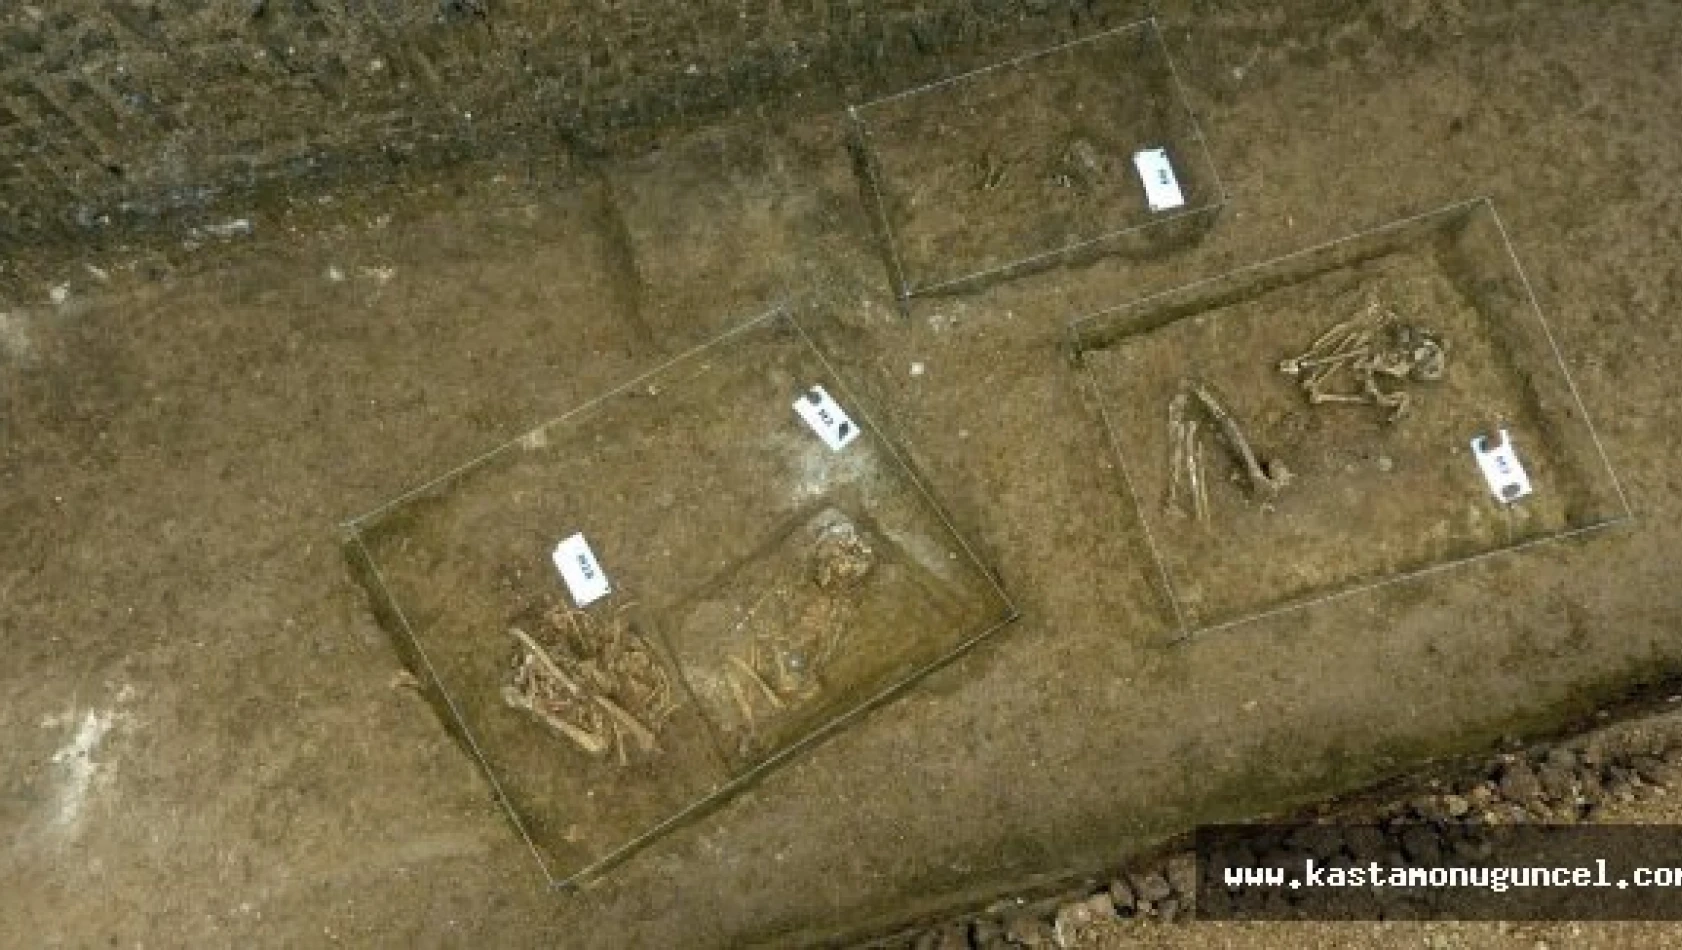 Kastamonu'daki kurganda 24 mezar bulundu